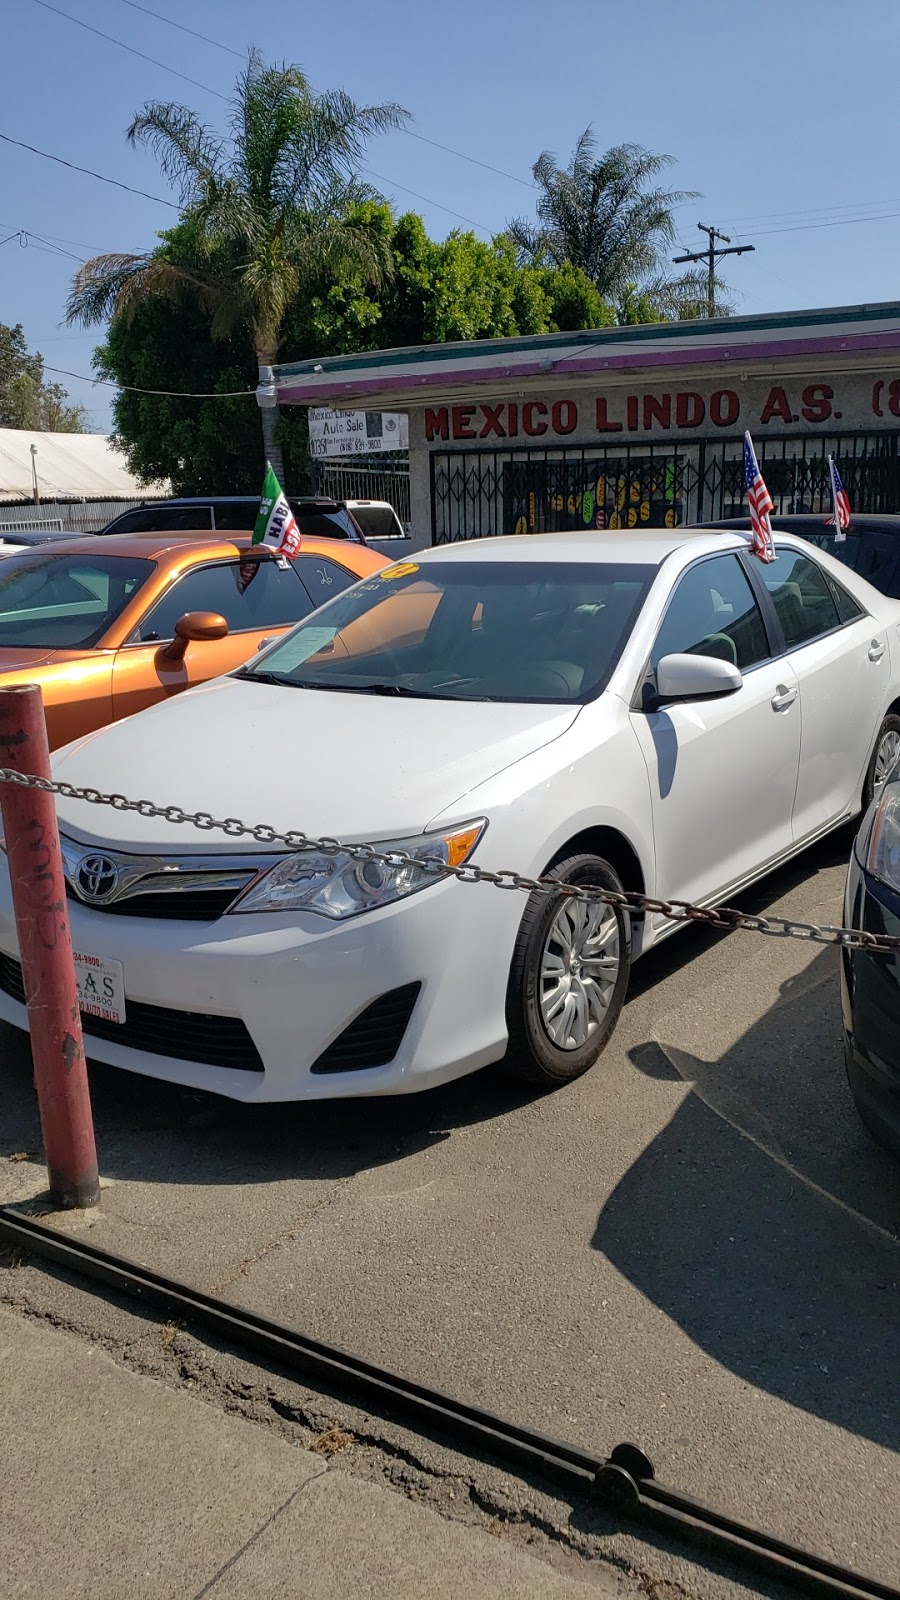 Mexico Lindo Auto Sales | 10351 San Fernando Rd, Pacoima, CA 91331, USA | Phone: (818) 834-9800